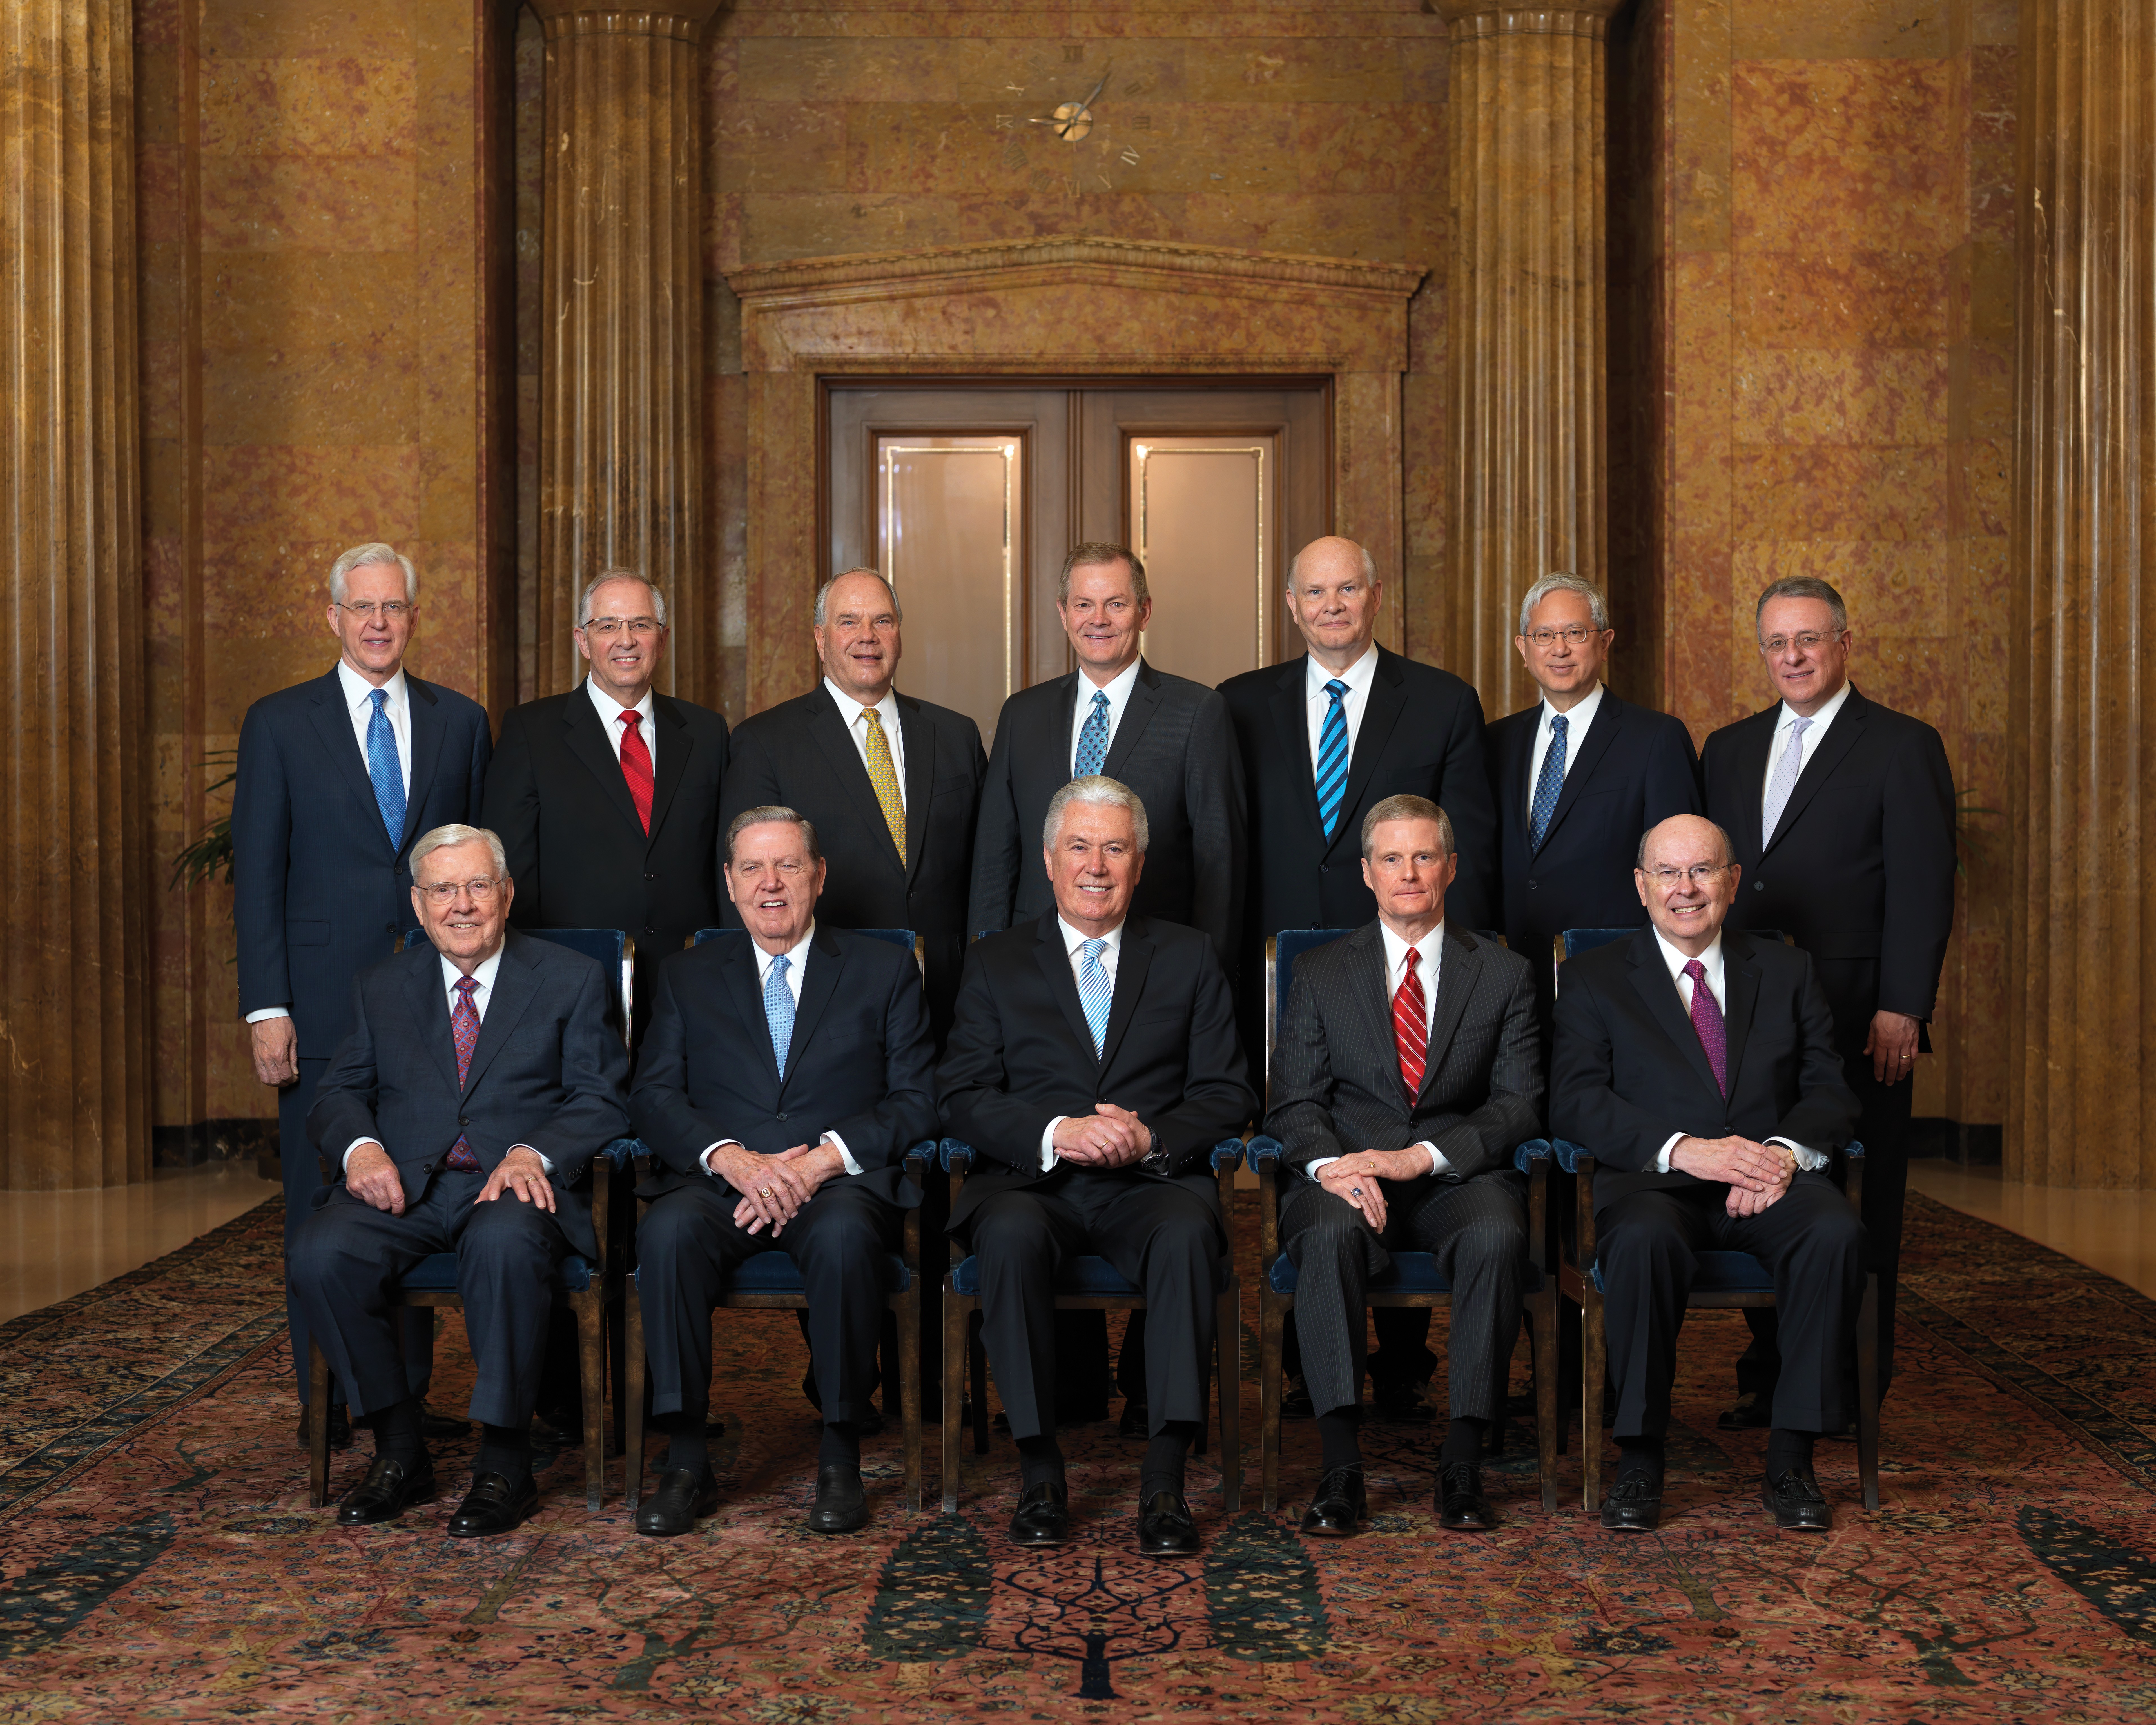 Retrato de grupo oficial do Quórum dos Doze Apóstolos.